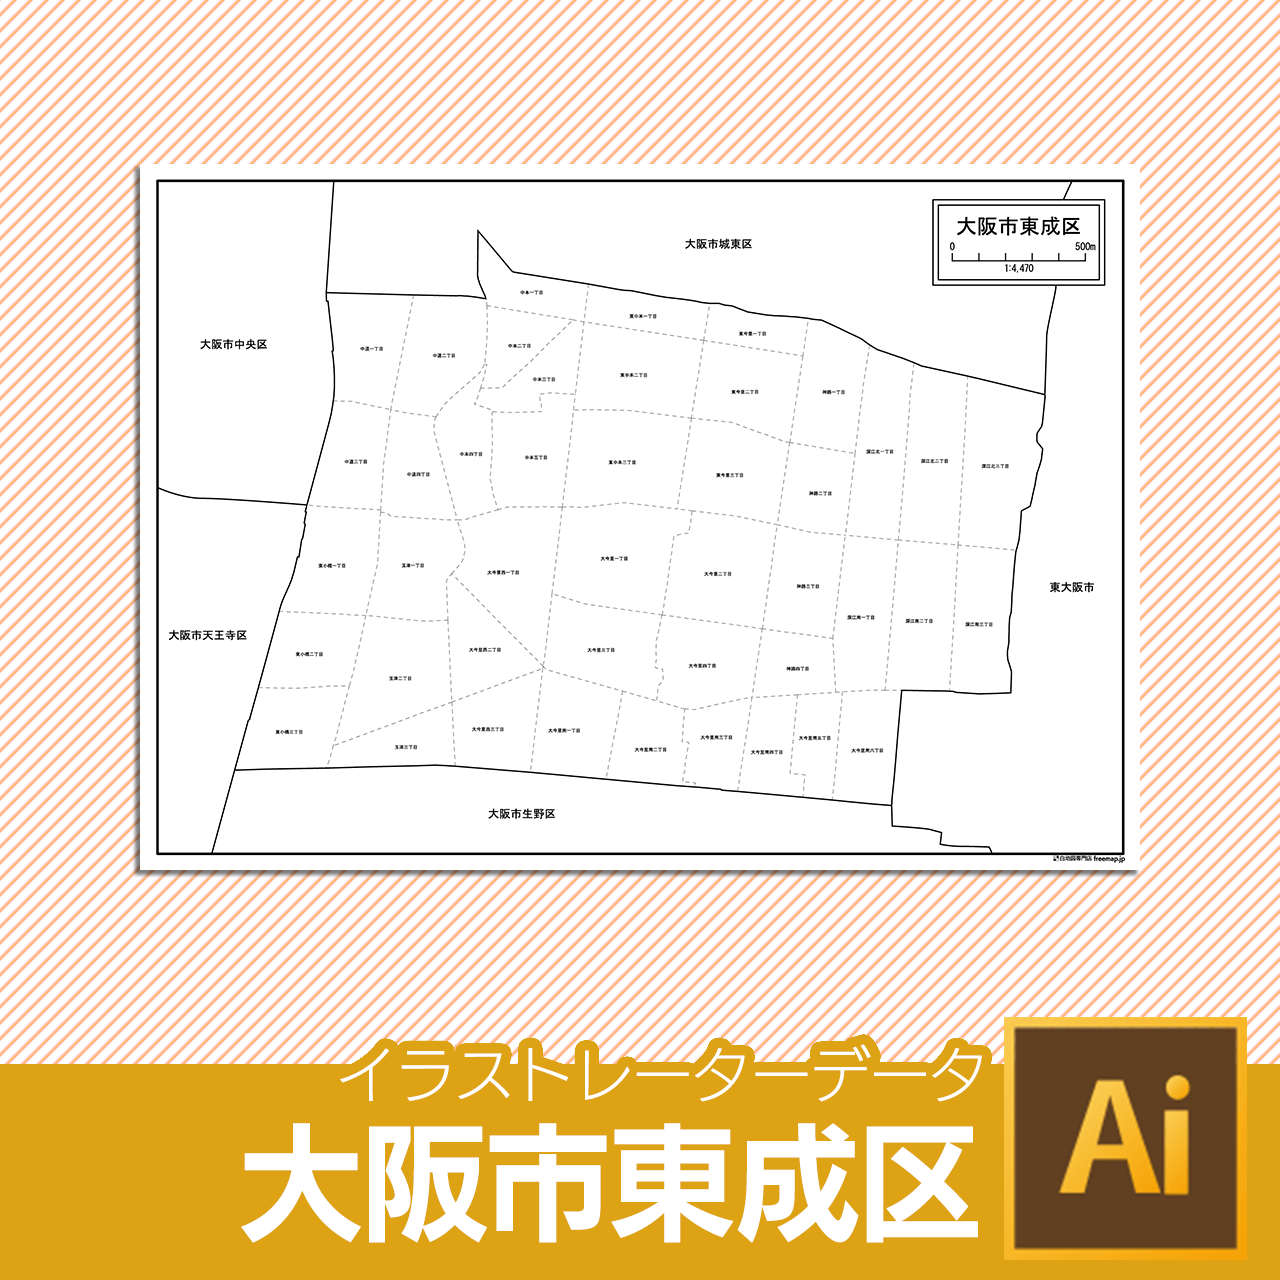 大阪市東成区のaiデータのサムネイル画像